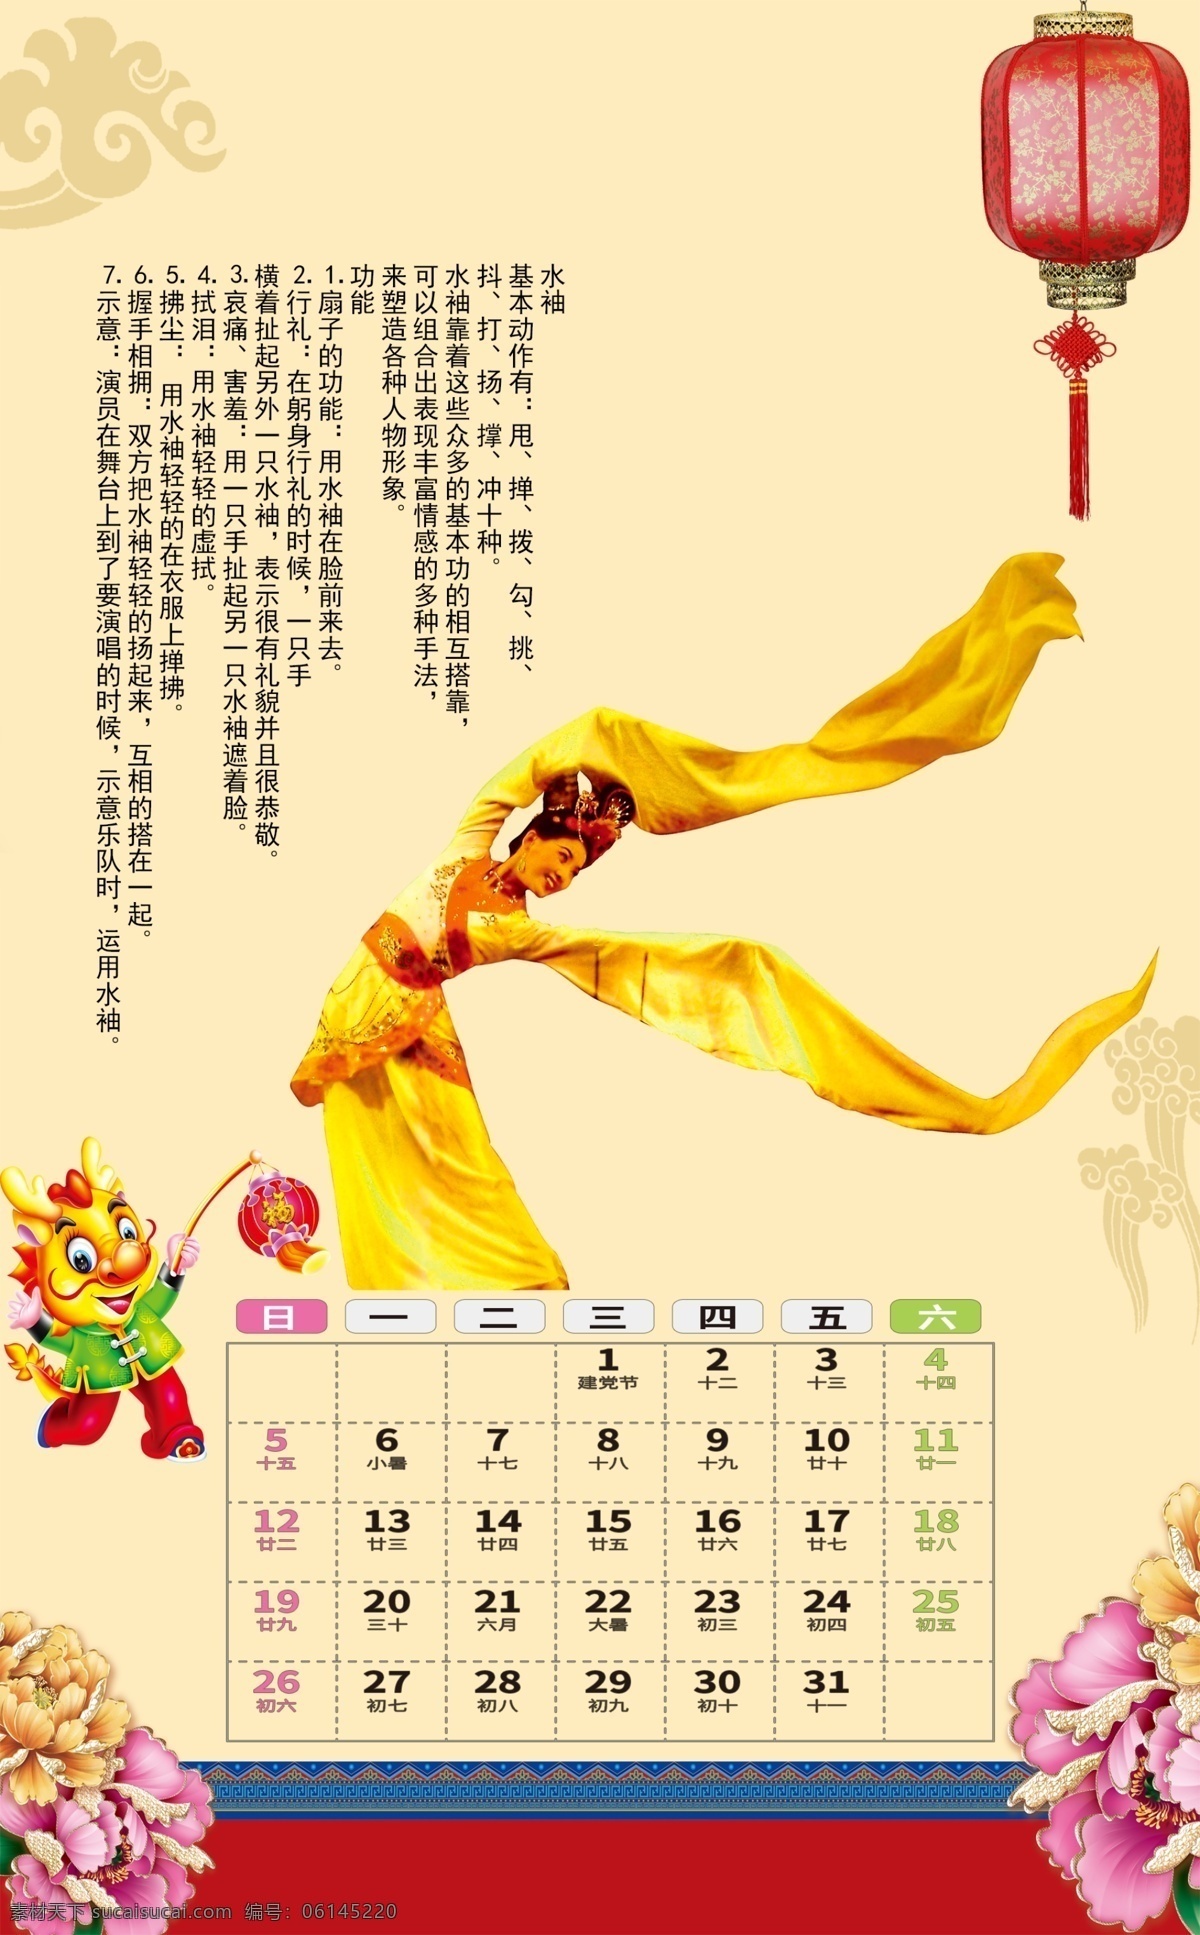 2020 年 京剧 月 水袖 挂历 2020年 7月挂历 牡丹 灯笼 舞蹈 戏曲 日历 文化艺术 传统文化